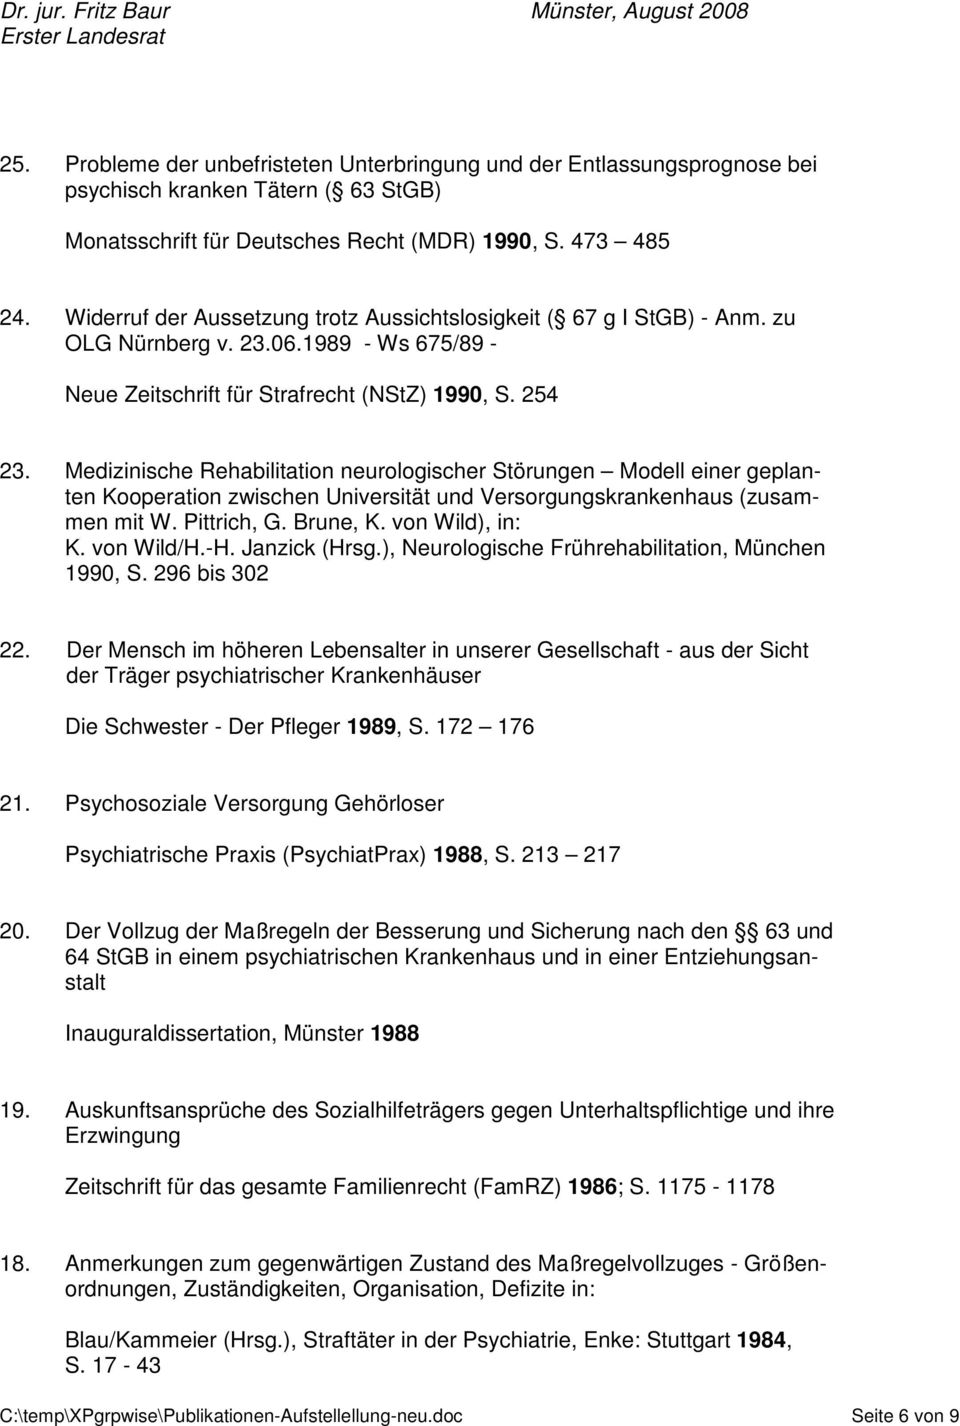 Medizinische Rehabilitation neurologischer Störungen Modell einer geplanten Kooperation zwischen Universität und Versorgungskrankenhaus (zusammen mit W. Pittrich, G. Brune, K. von Wild), in: K.